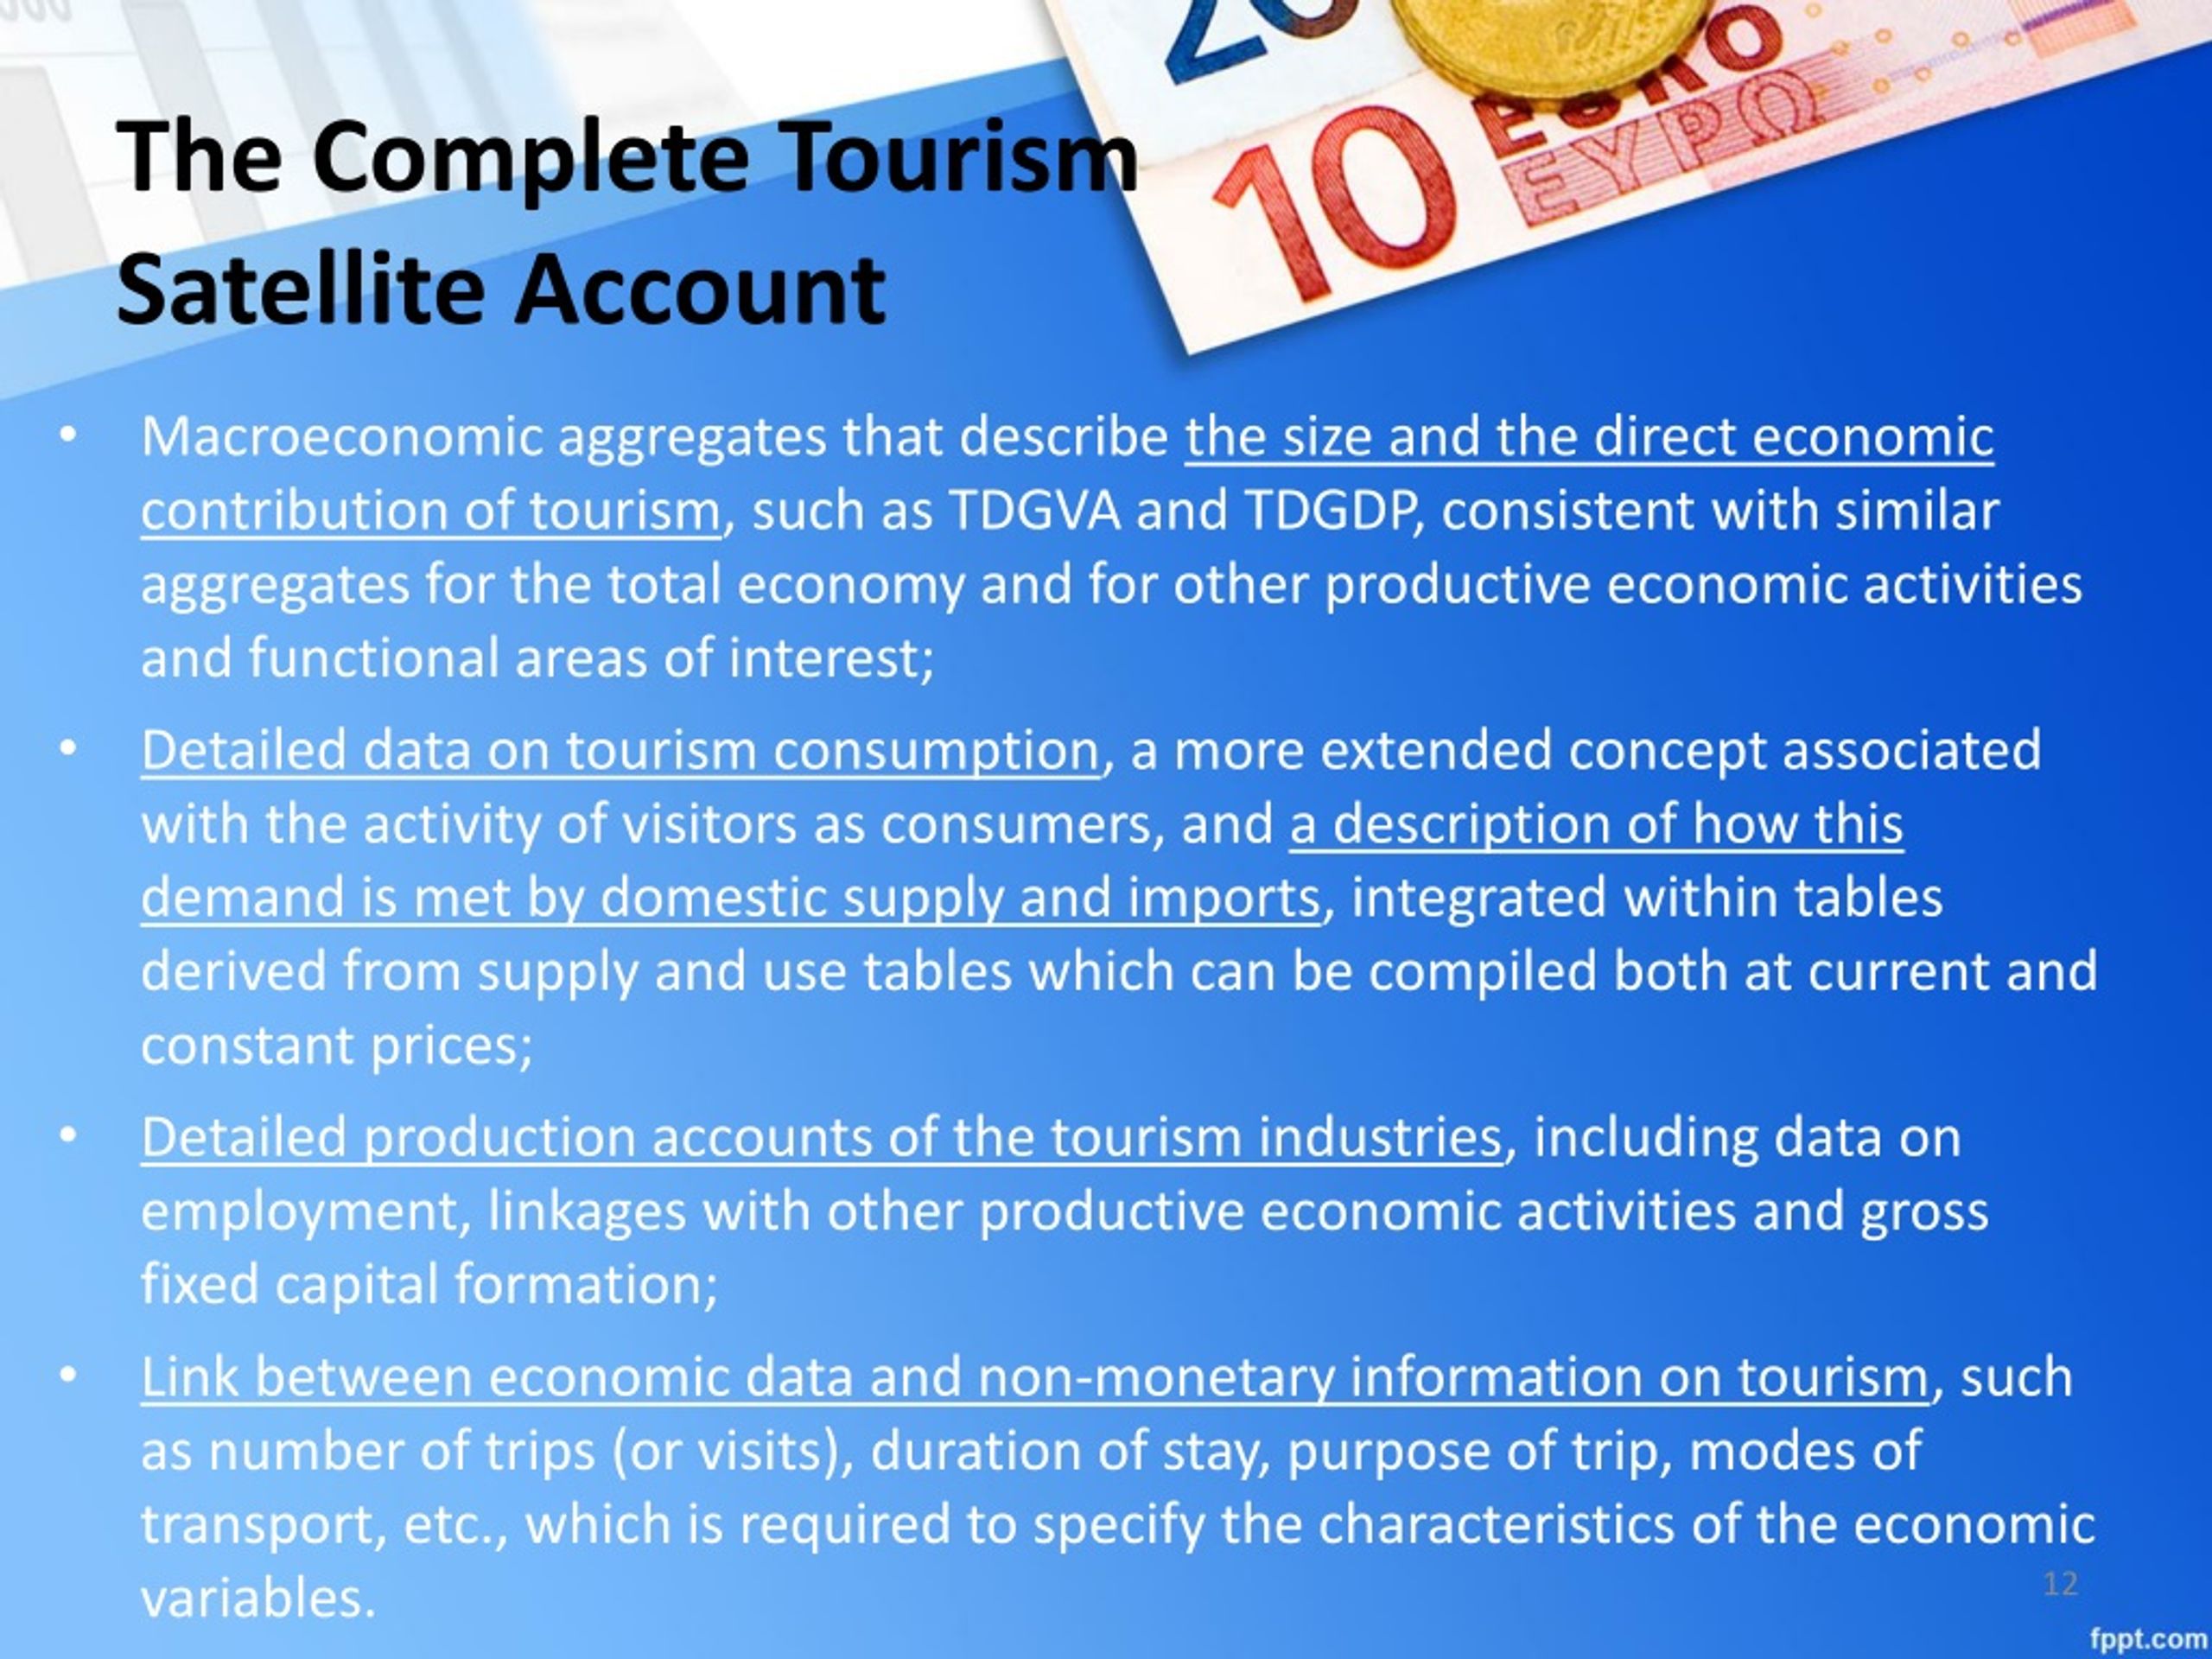 tourism satellite account india